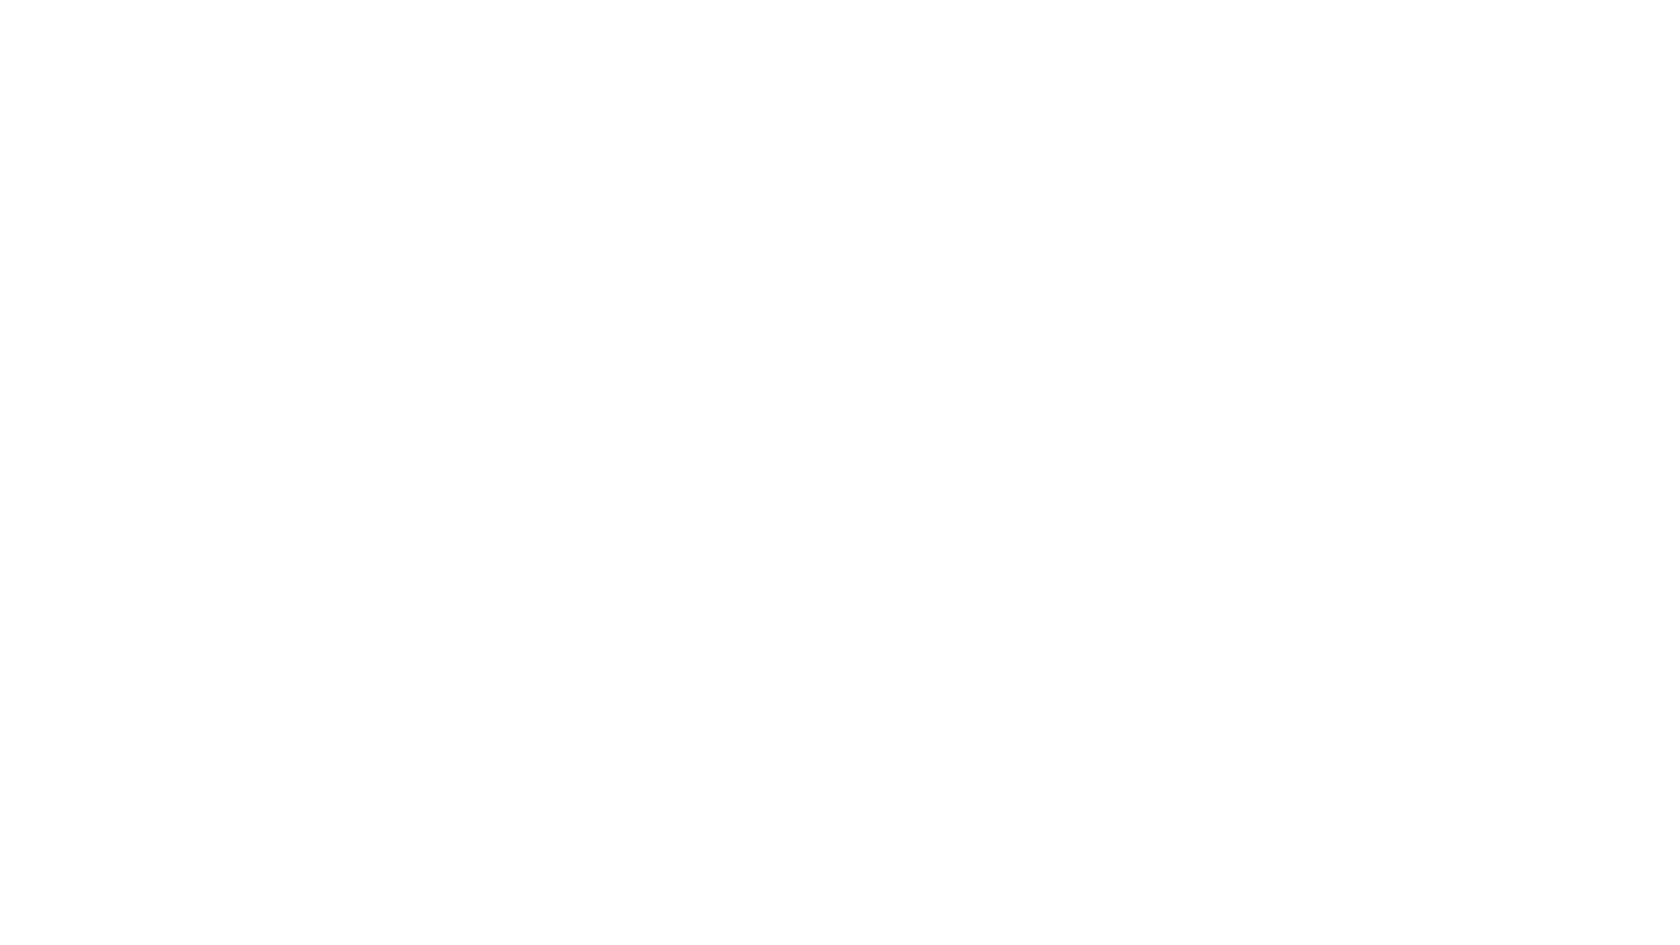 Вологодская роспись (Северная Хохлома). Фоновое письмо. Деревянная тарелка (фрагмент), темперные краски